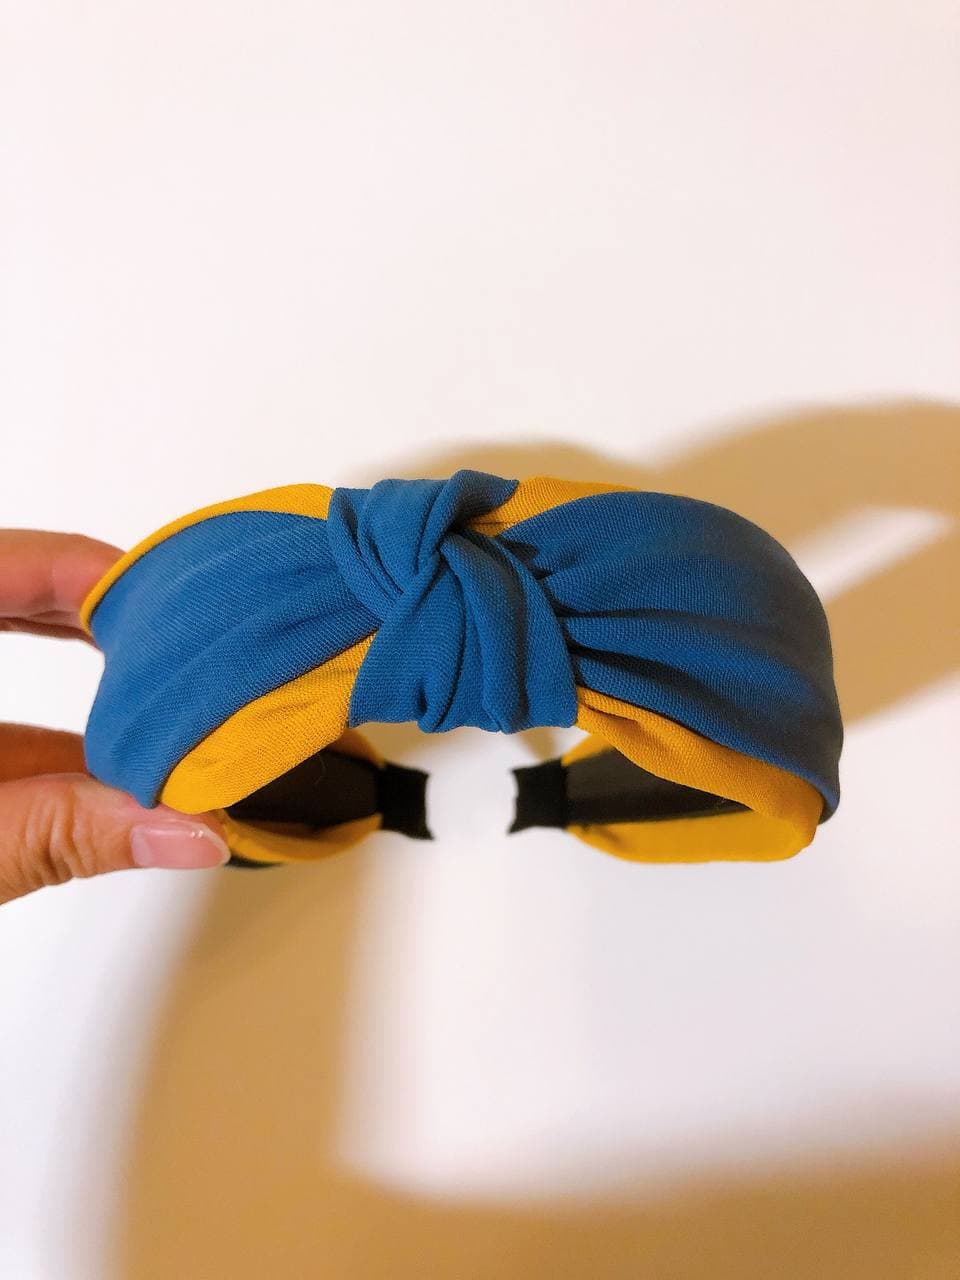 韓式人工髮箍- 藍黃色髮箍